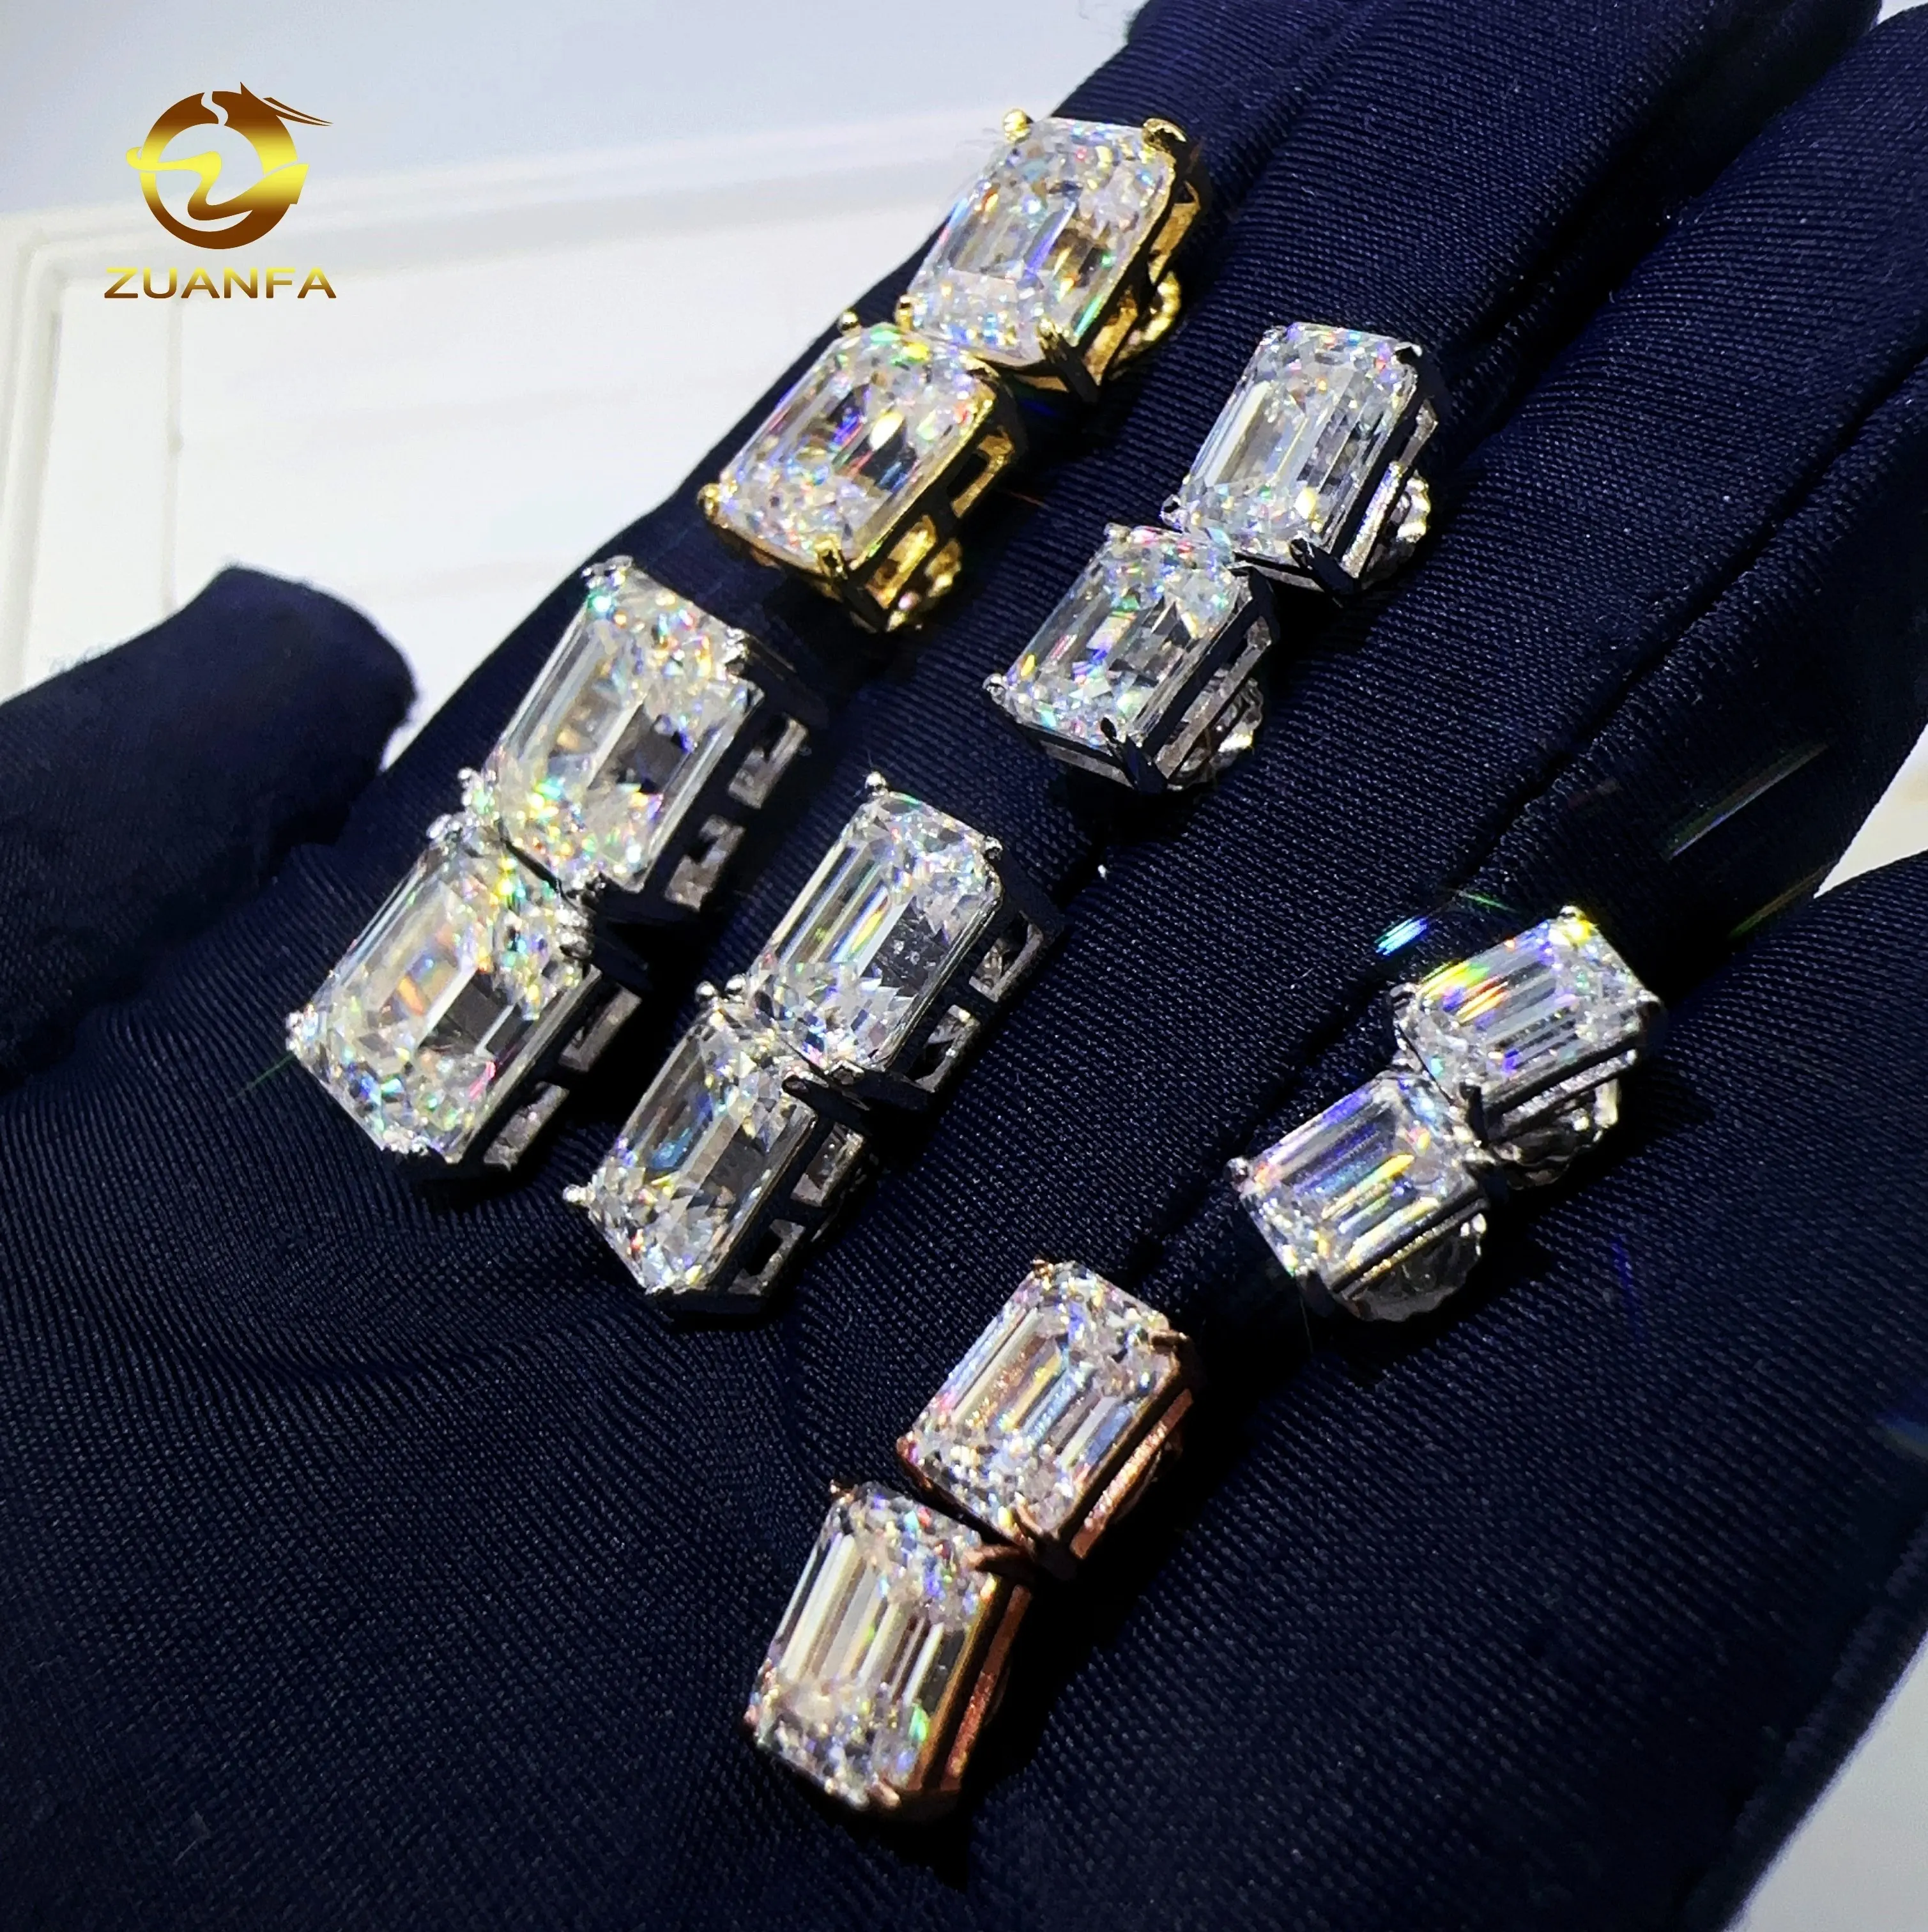 Zuanfa Wholesale Factory Price VVS Emerald Diamond 925 Sterling Silver Jewelry Screw Back Moissanite Stud Earrings